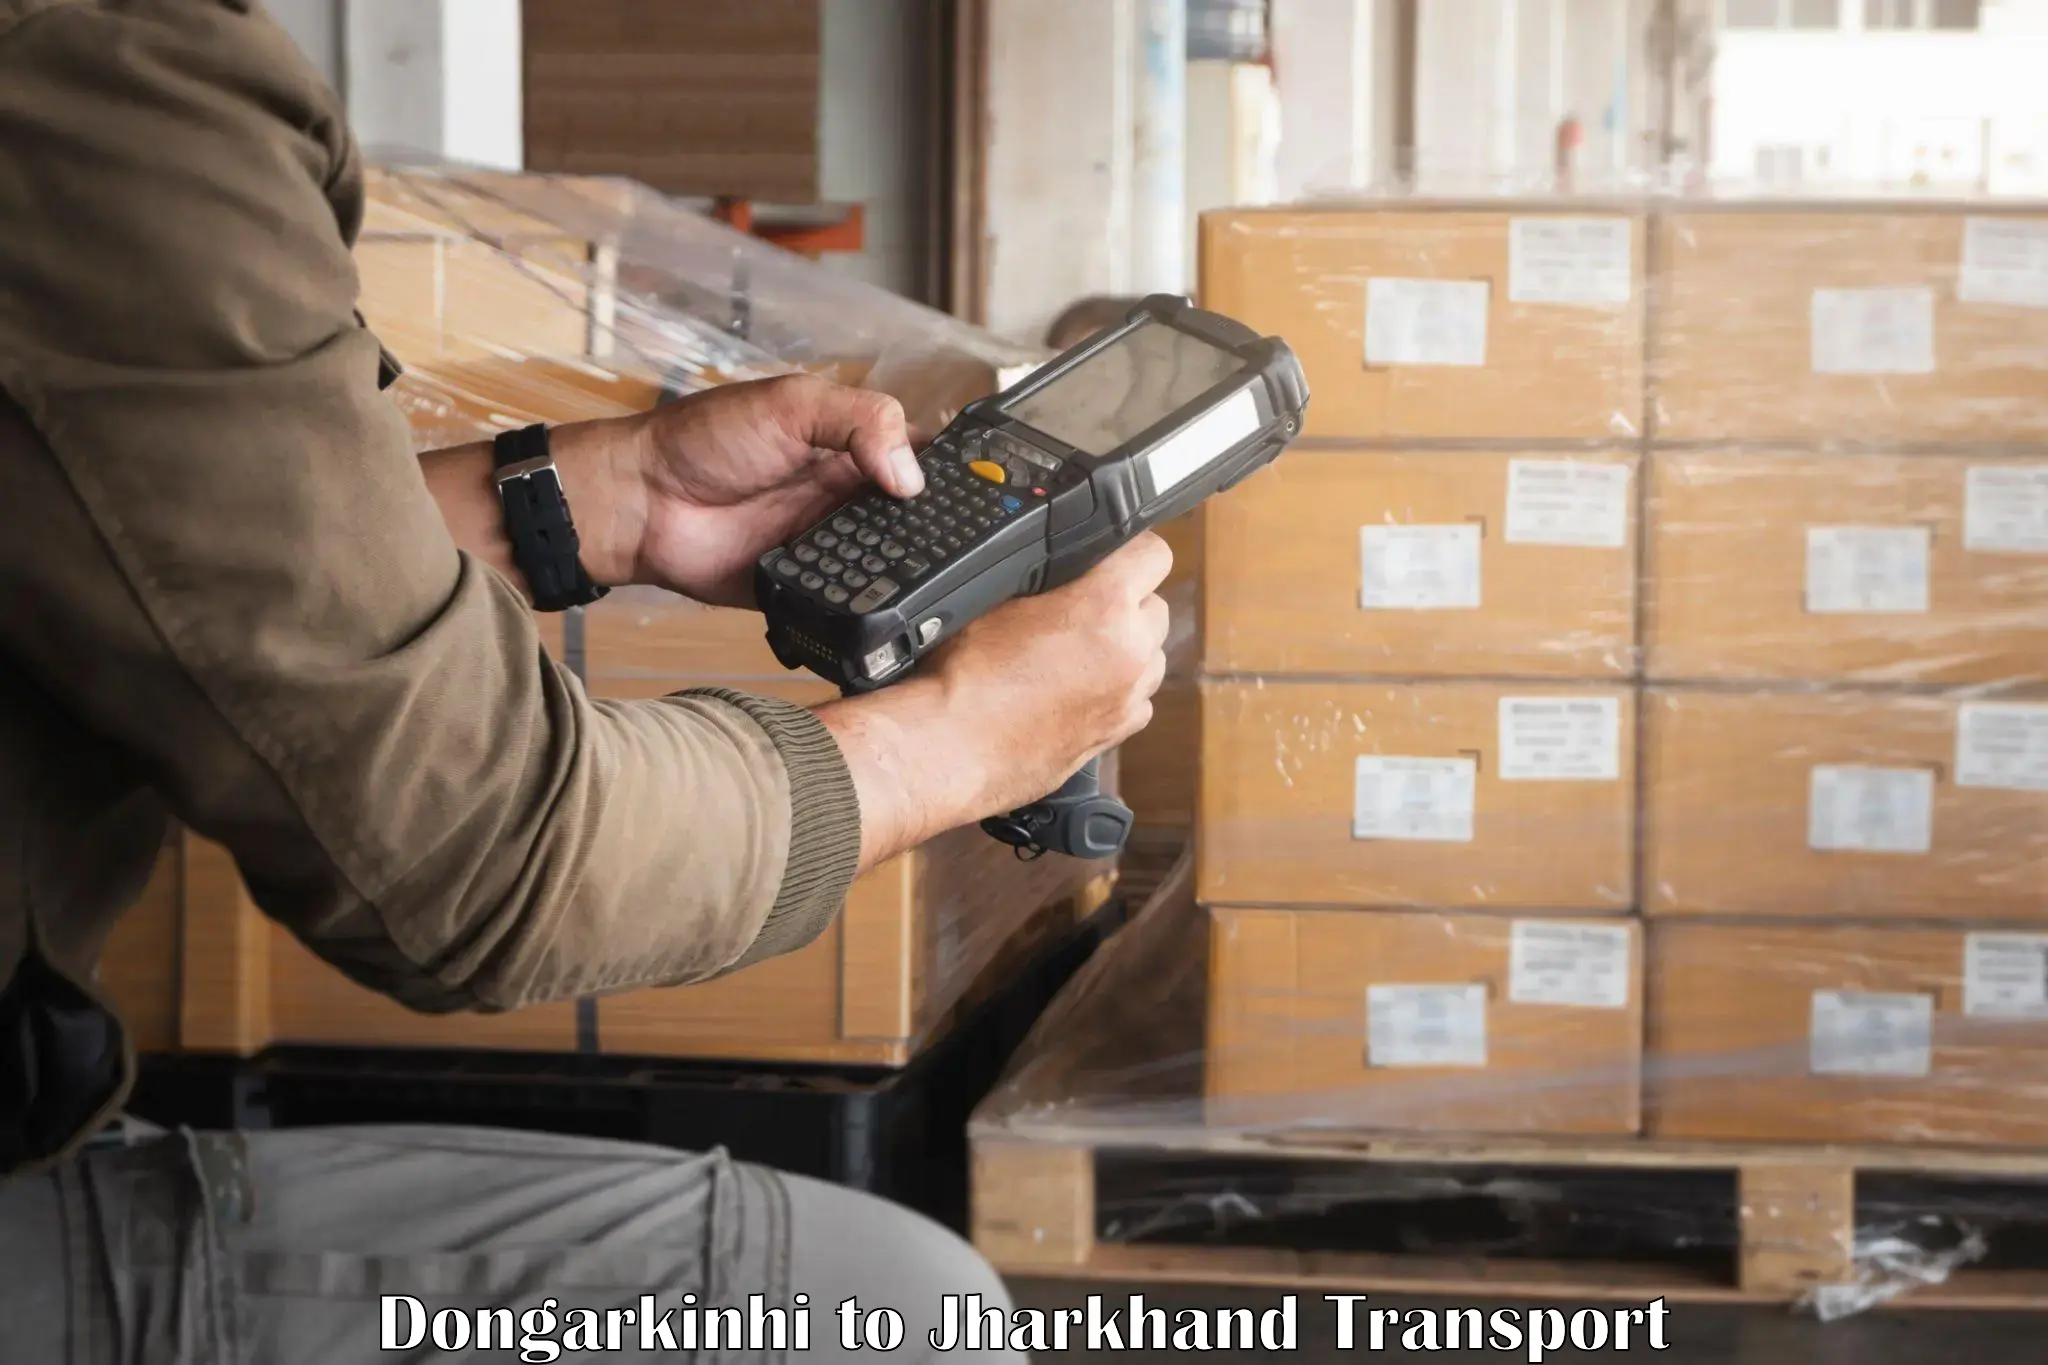 Transport shared services Dongarkinhi to Medininagar